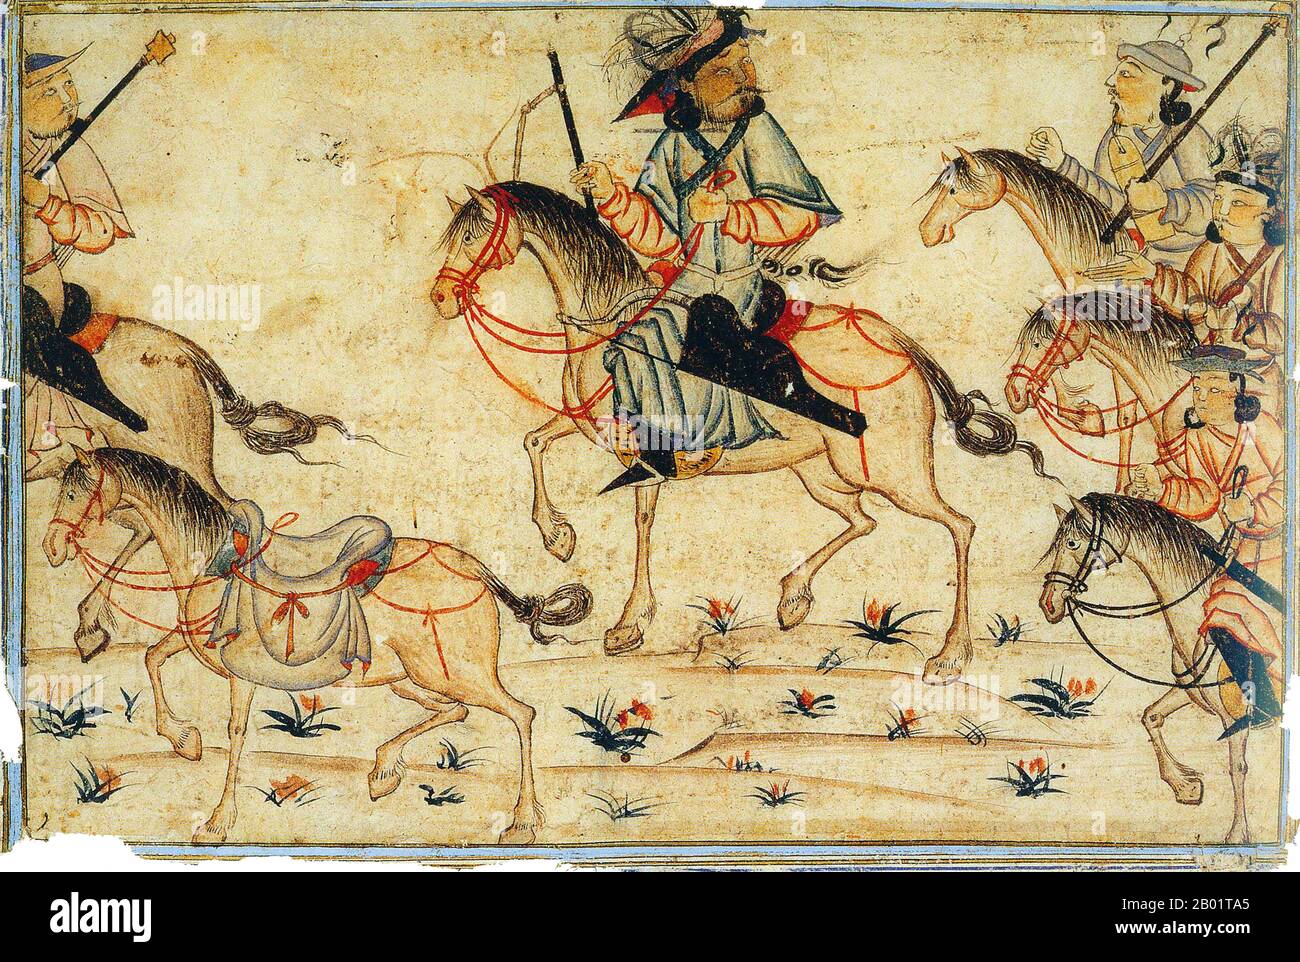 Iran/Persia: Un khan mongolo o nobili di alto rango con i suoi soldati. Acquerello dipinto di Rashid al-DIN, Jami al-Tawarikh, c. 1305 d.C. Il Jāmiʿ al-tawārīkh ("Compendio delle Cronache") o storia universale è un'opera di letteratura e storia iraniana scritta da Rashid-al-DIN Hamadani all'inizio del XIV secolo. Foto Stock